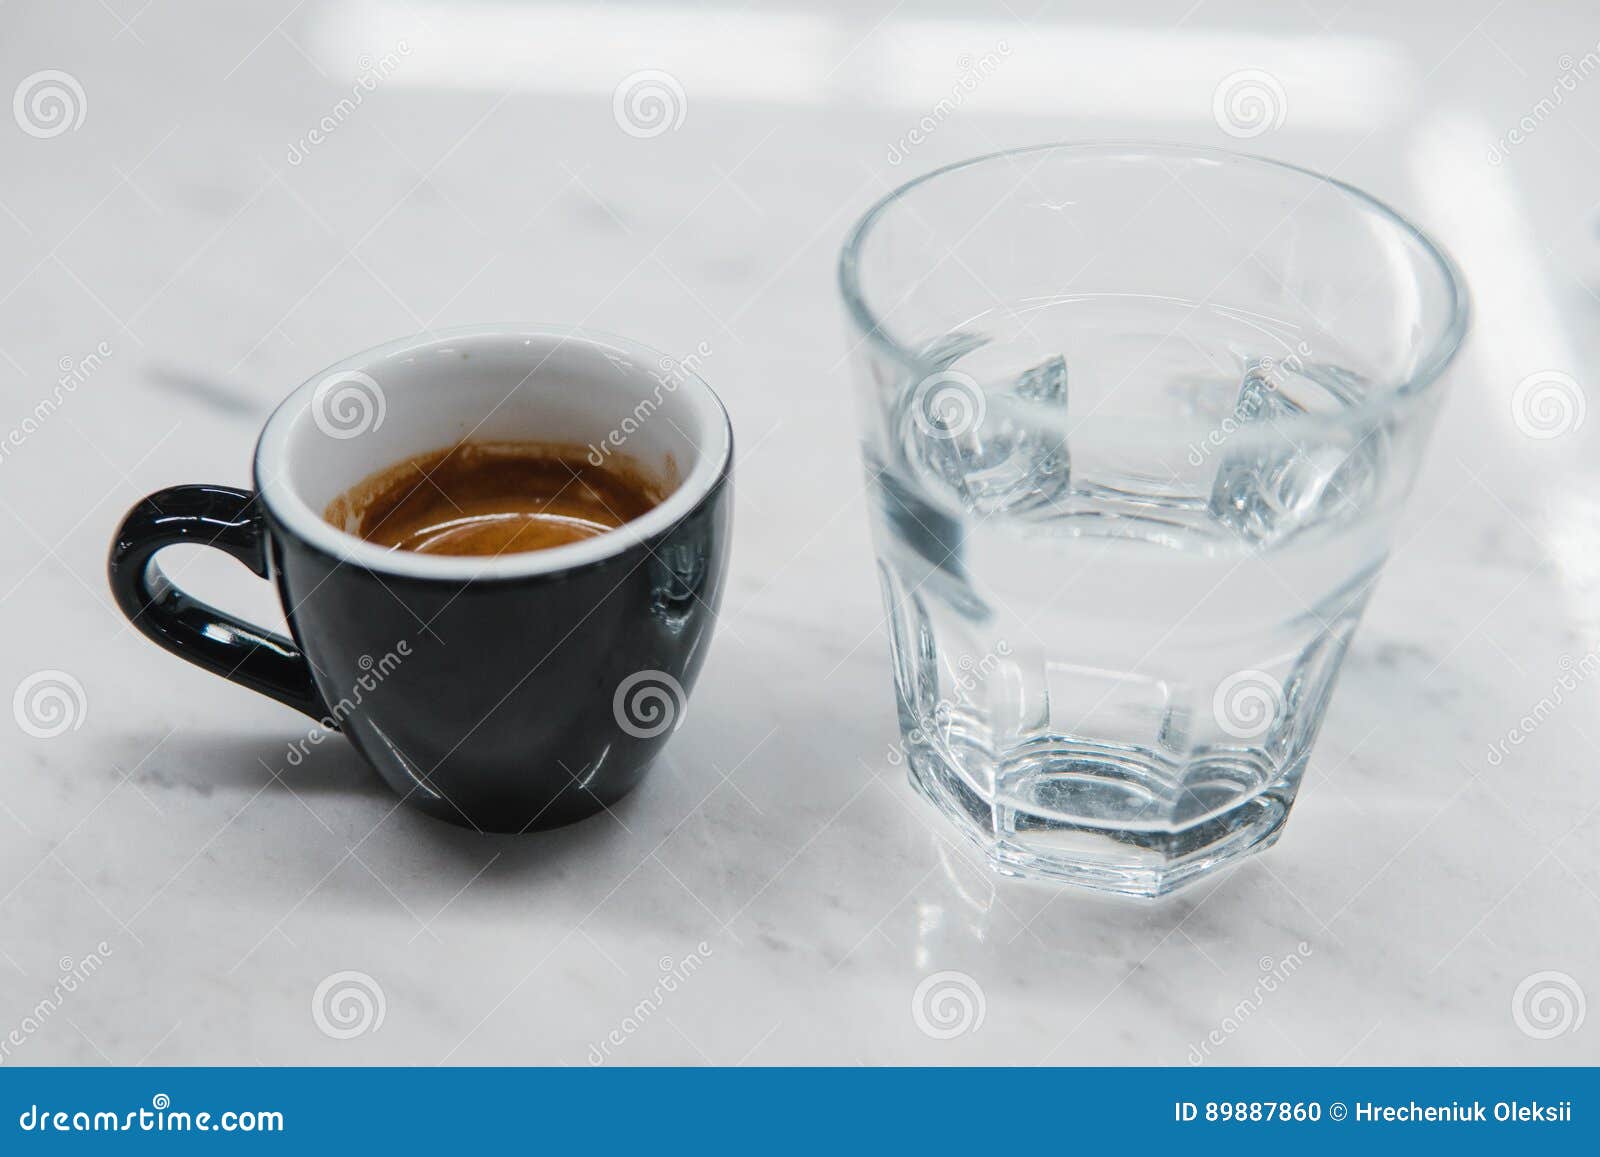 Выпить эспрессо. Эспрессо с водой. Стакан вблизи. Чашки для эспрессо с водой. Эспрессо подача с водой.